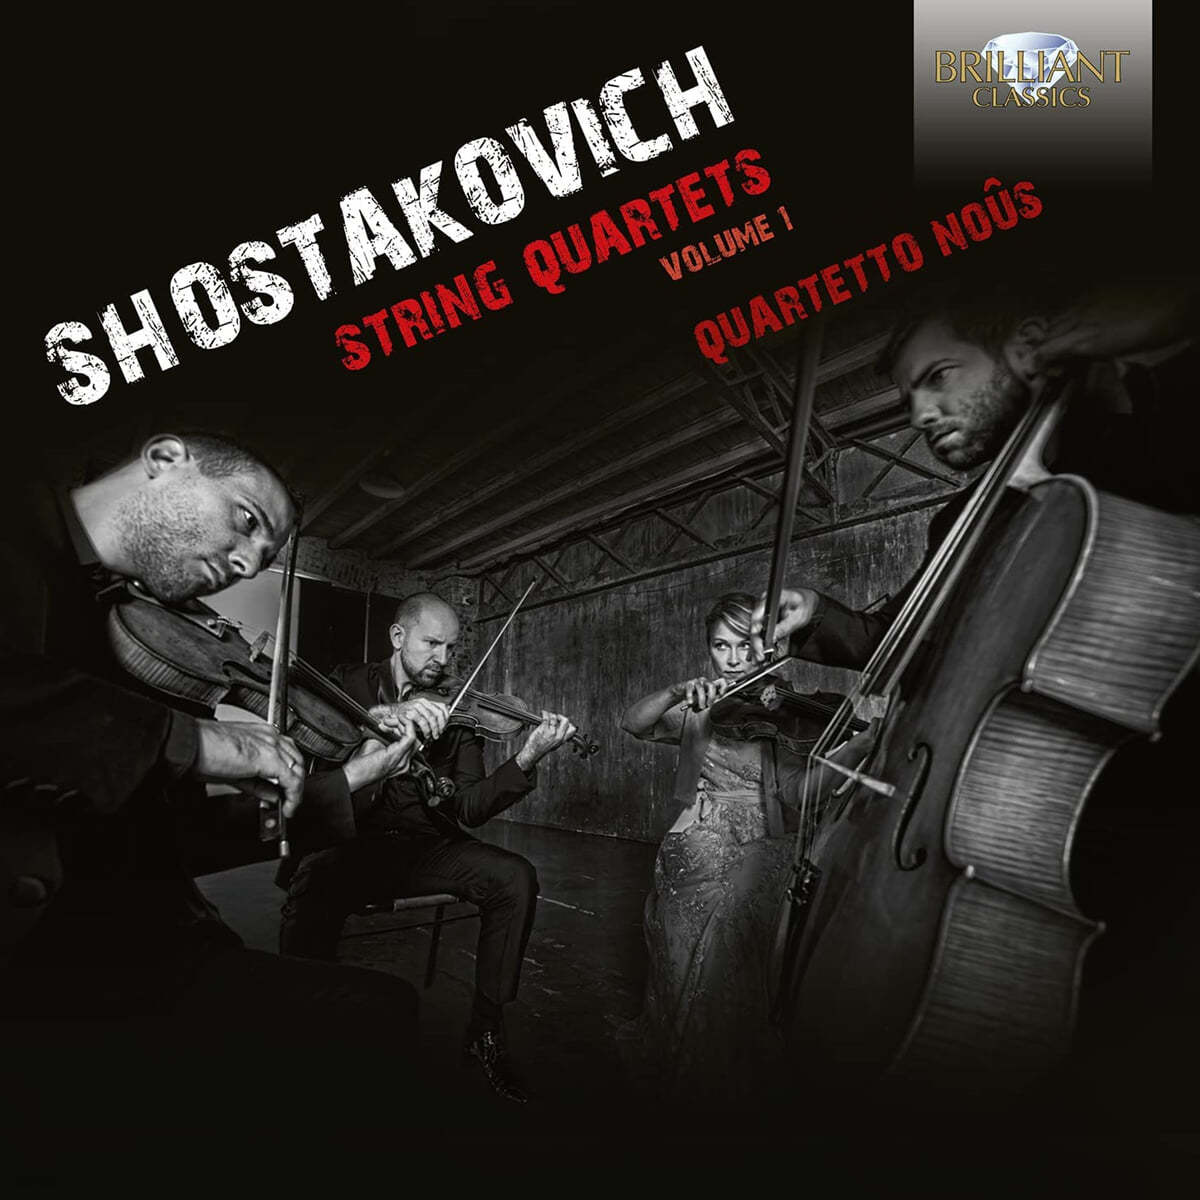 Quartetto Nous 쇼스타코비치: 현악 4중주 3, 5, 7, 8, 9번 (Shostakovich: String Quartets Vol. 1)